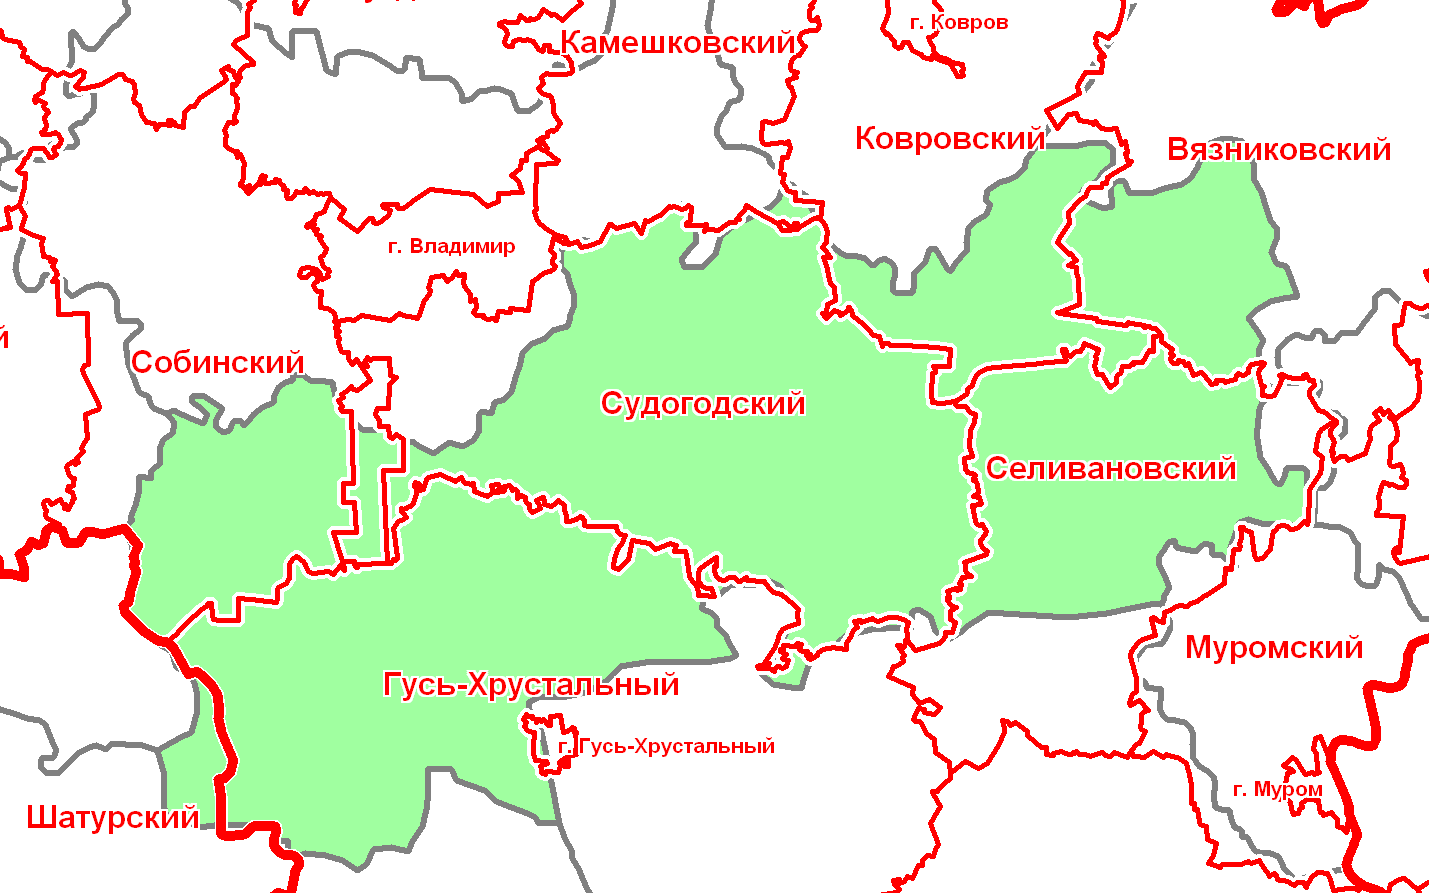 Кадастровая карта александровского района владимирской